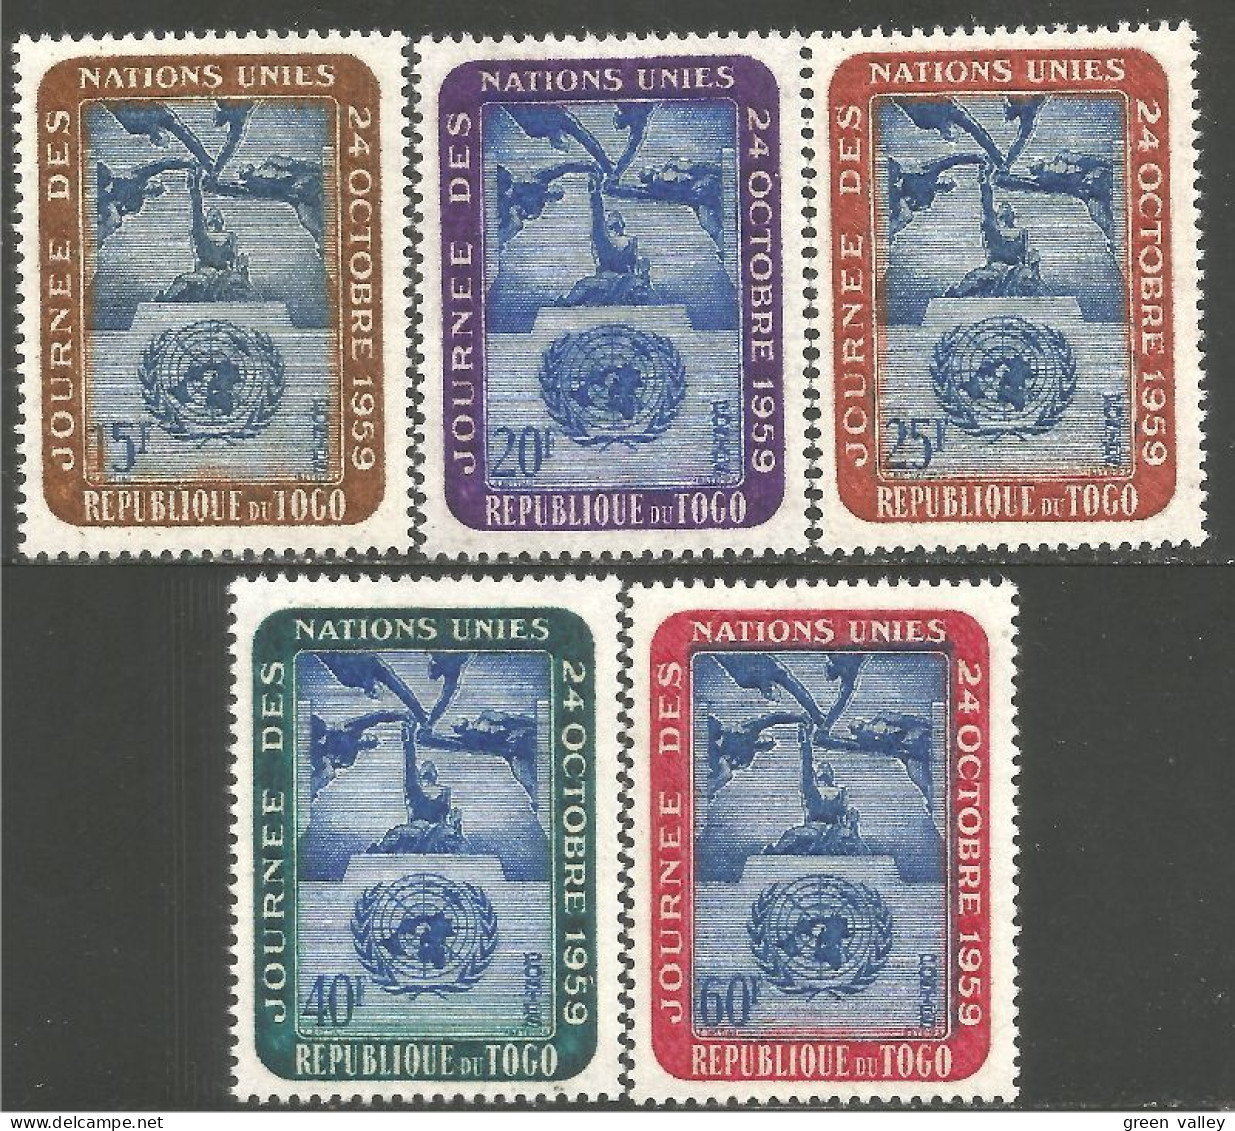 870 Togo United Nations Unies MH * Neuf (TGO-120) - Togo (1960-...)